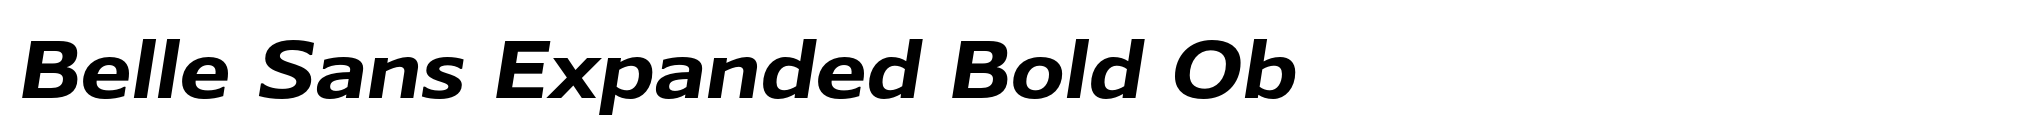 Belle Sans Expanded Bold Ob image